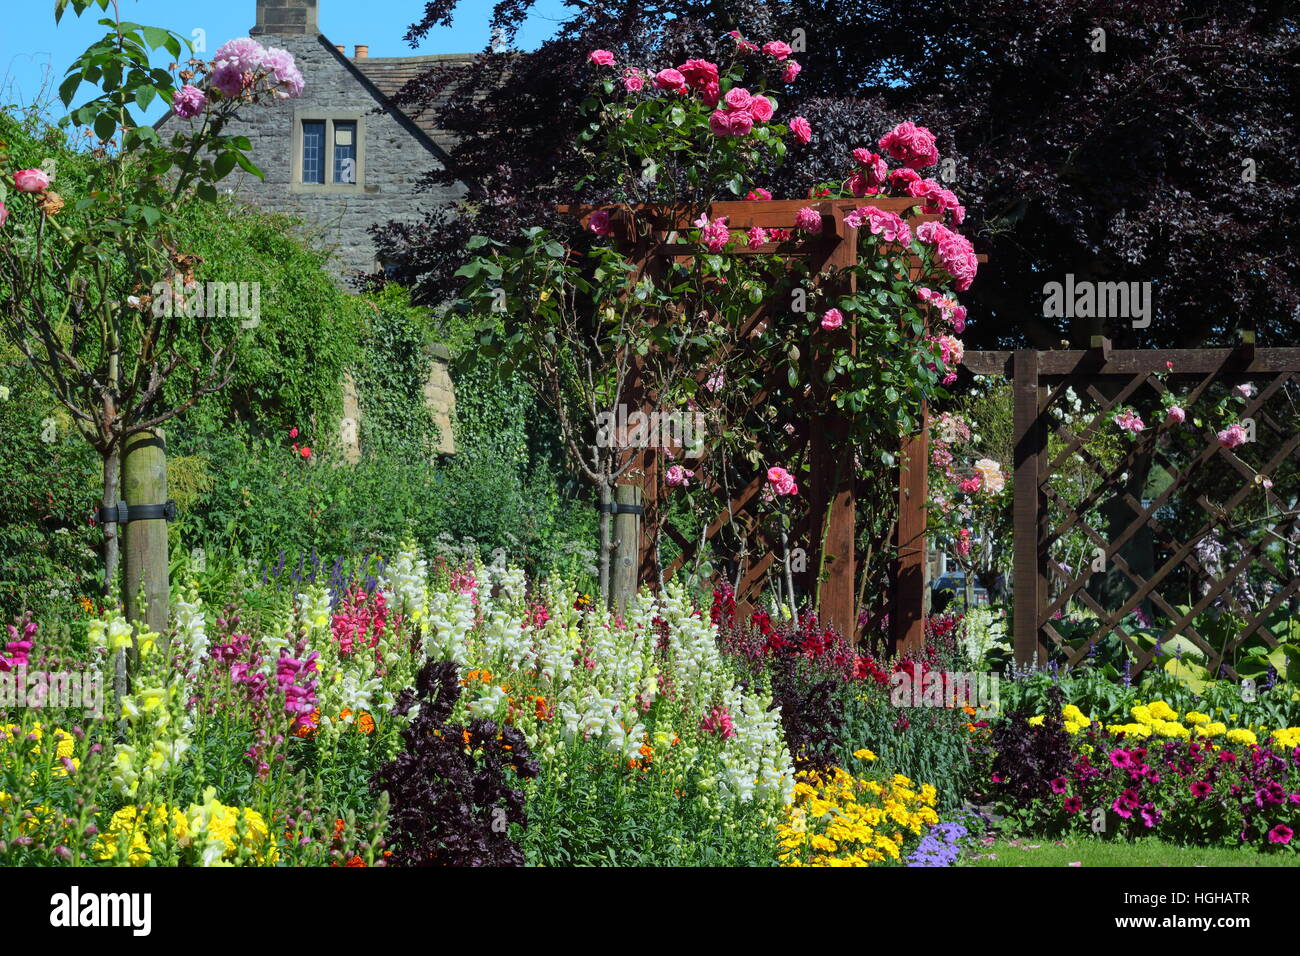 Fleur d'été montrant la frontière avec des hauteurs en couches tagètes, des gueules (antirrhinums) et de roses dans un jardin anglais Banque D'Images